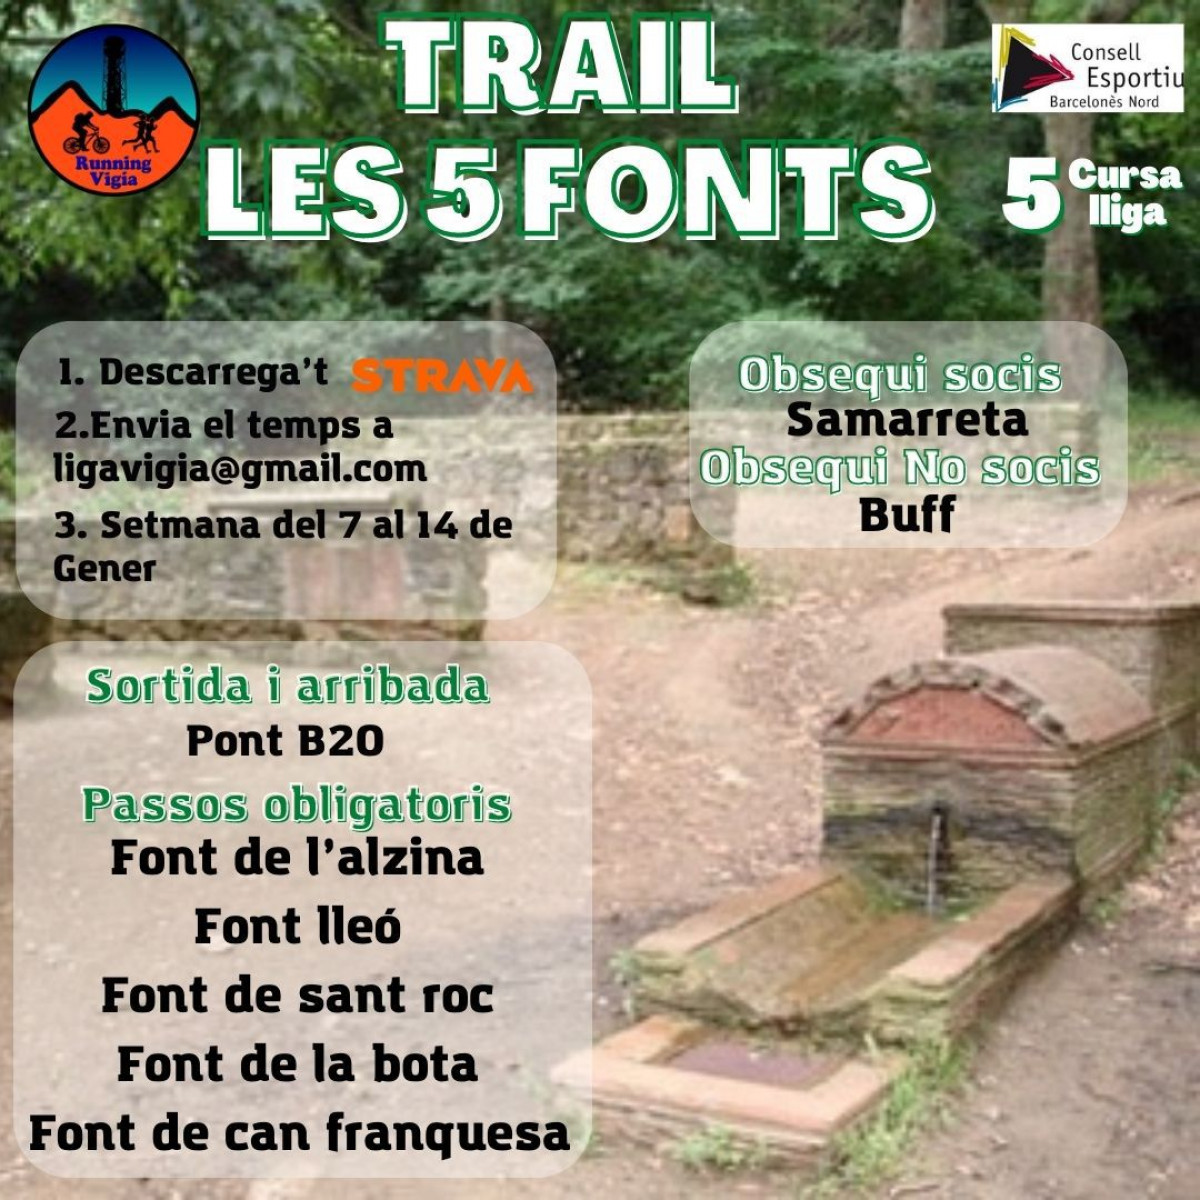 Trail 5 fonts